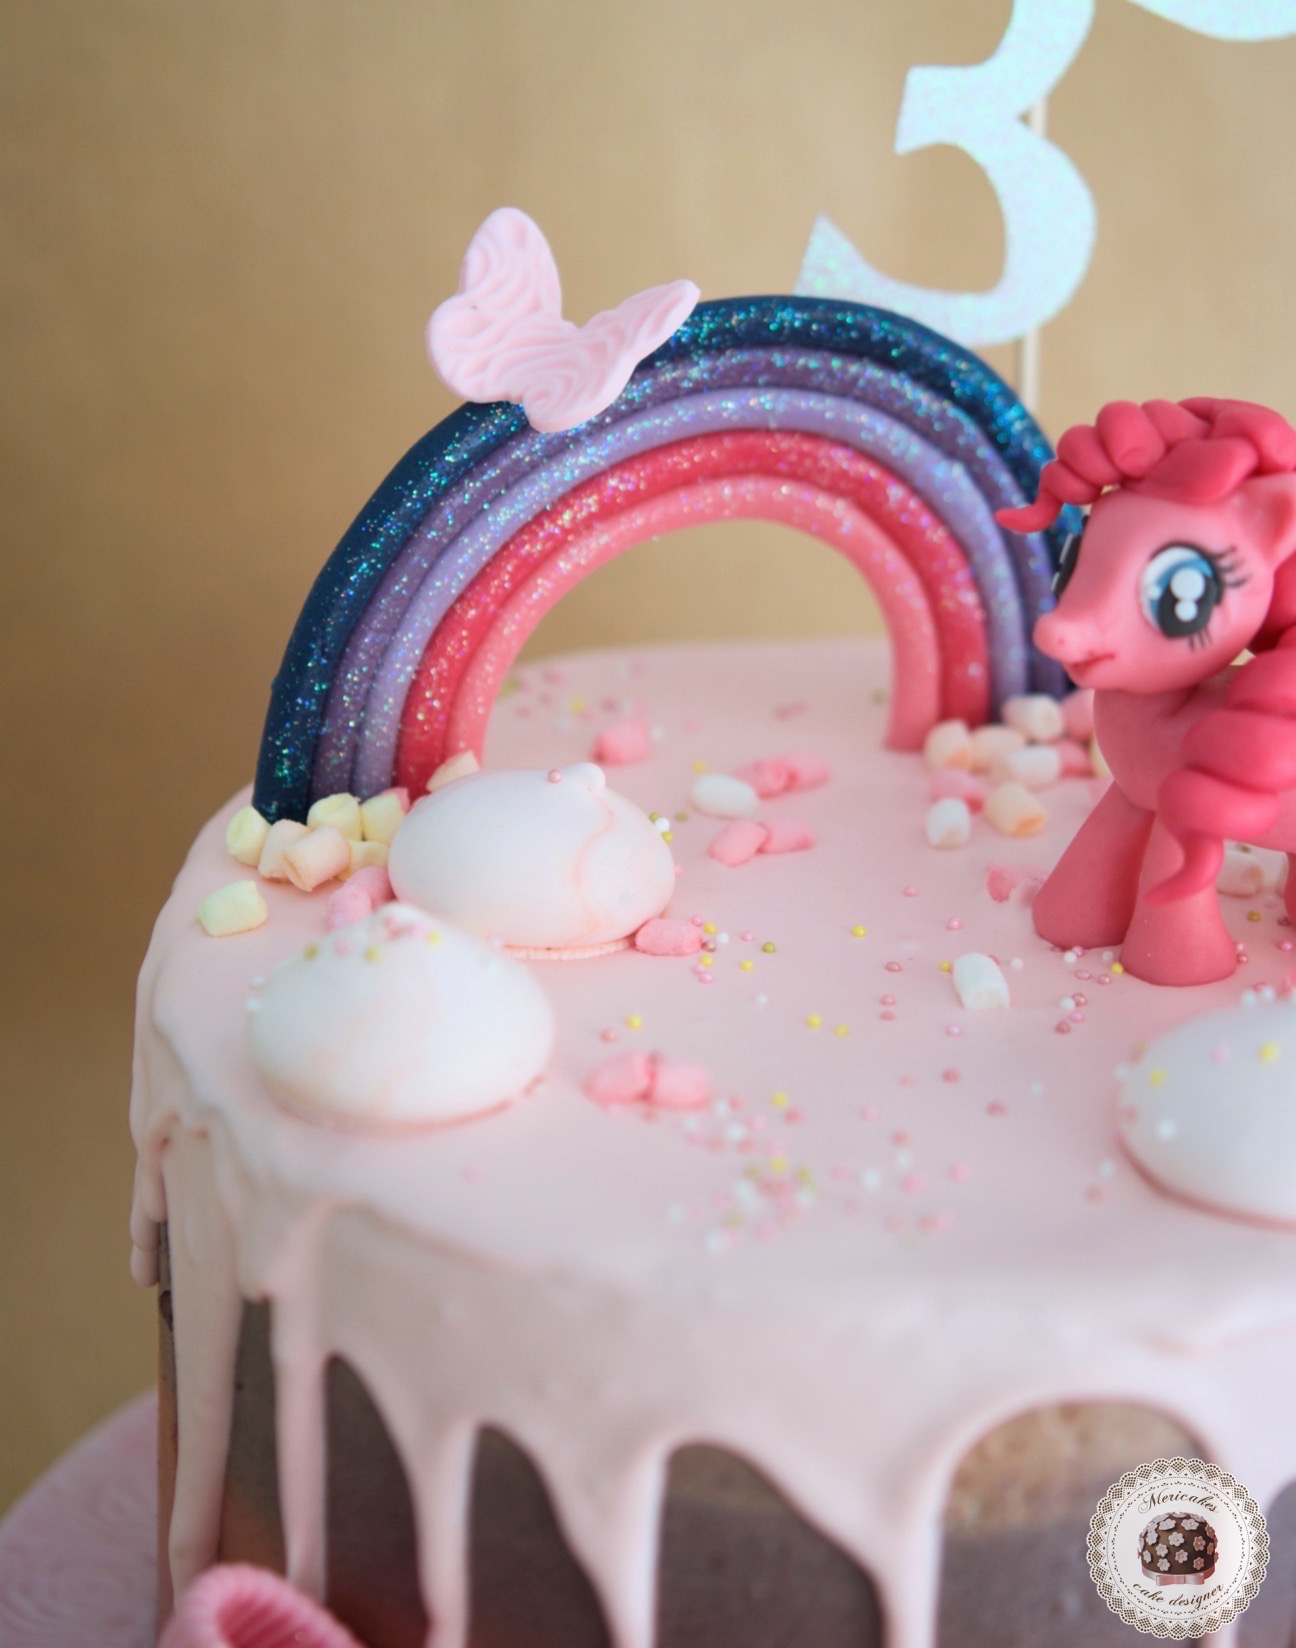 drip-cake-tartas-decoradas-my-little-pony-pinkie-pie-mi-pequeno-pony -mericakes-chocolate-meringue-kisses-pink-cake-pastel-de-cumpleanos-tartas-personalizadas-reposteria-creativa-5  - Mericakes - Cake Designer